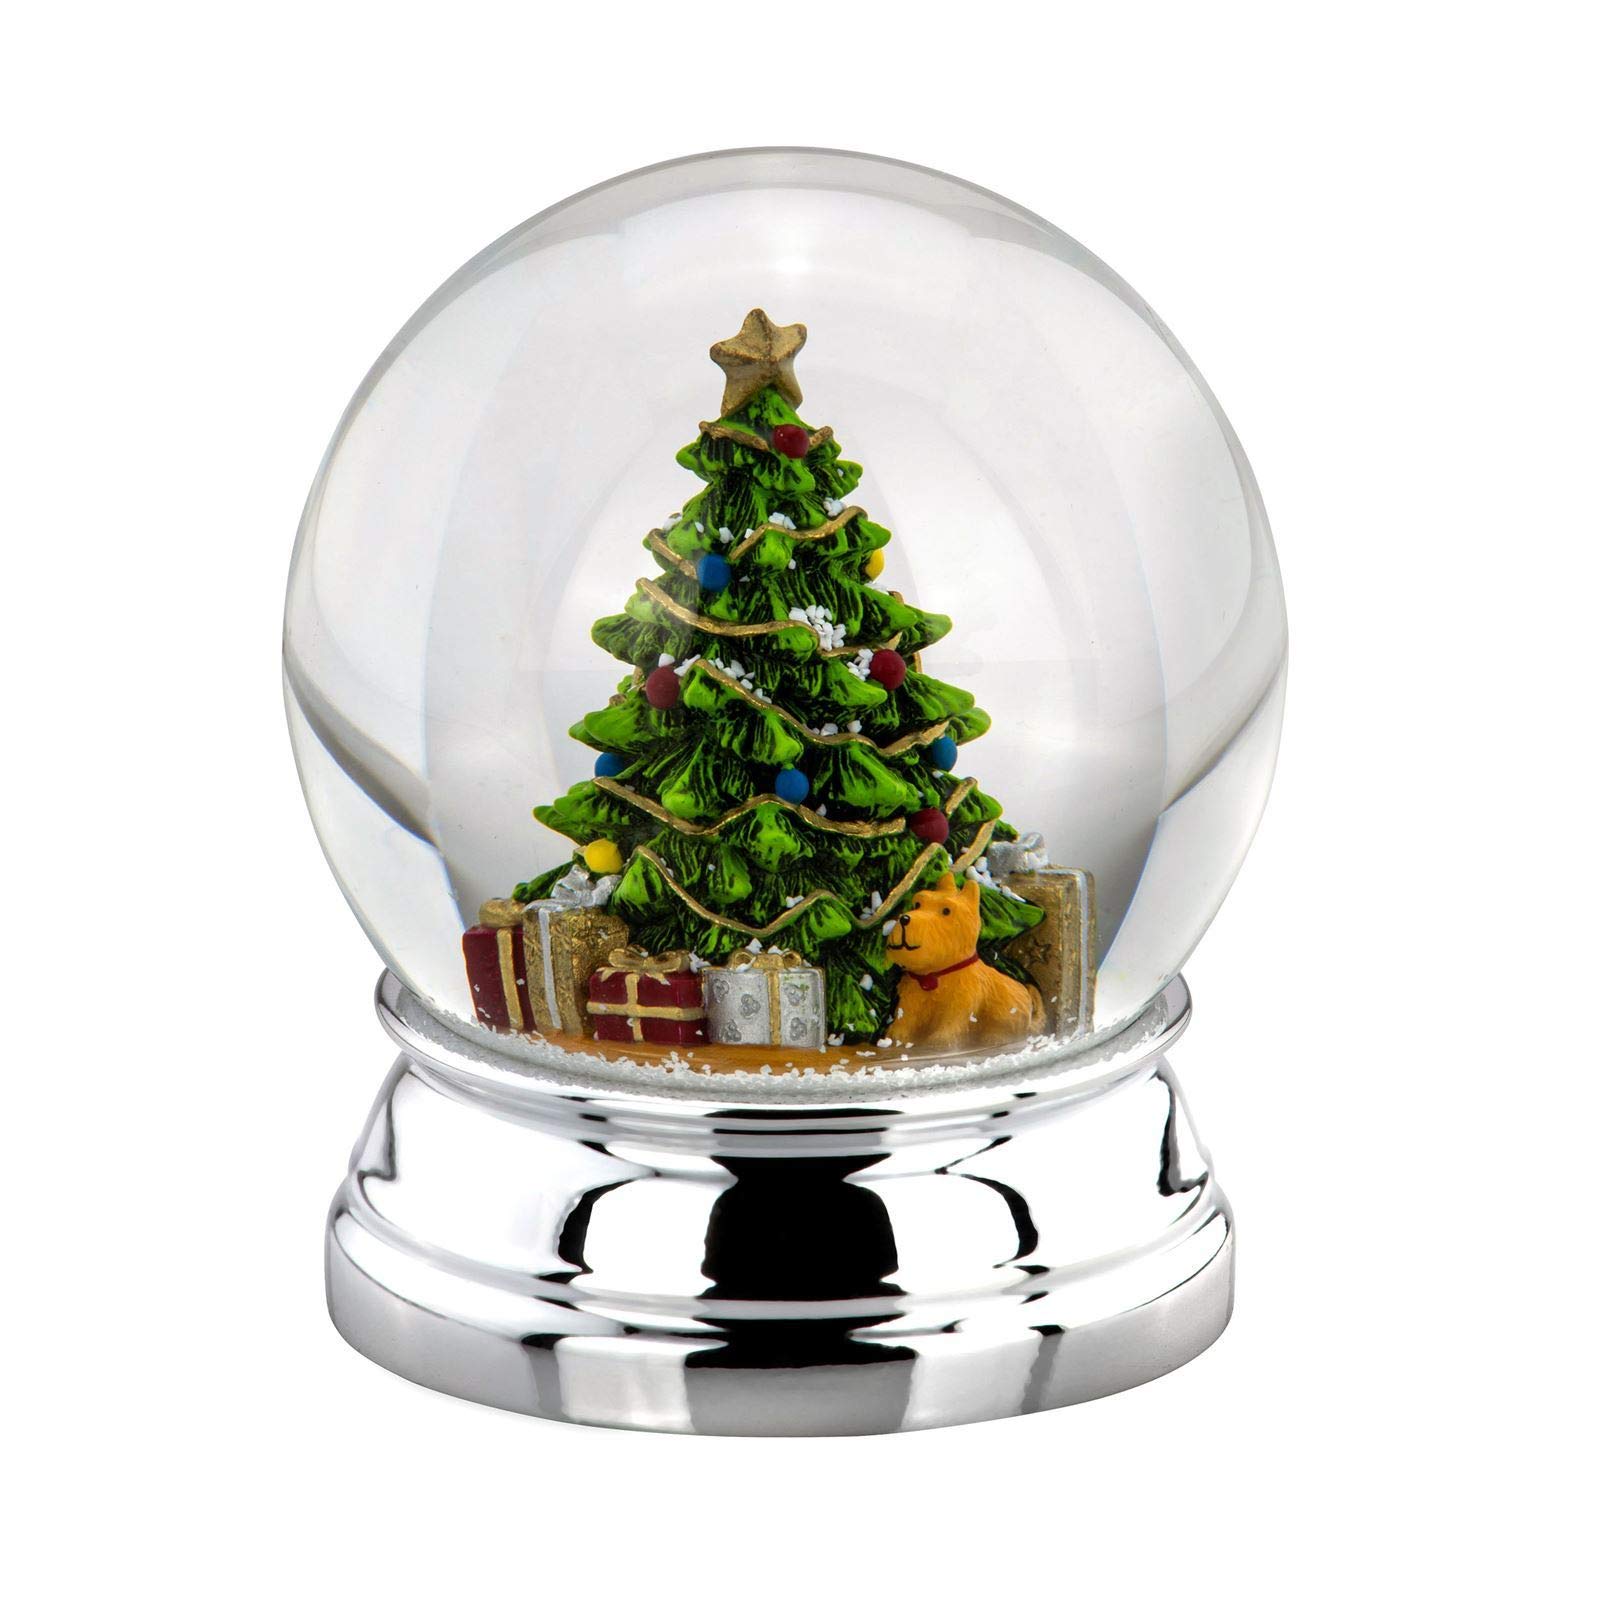 Große versilberte Glas Schnee-Kugel mit geschmückten Weihnachtsbaum Ø 10 cm - Chrismas Deko Schüttelkugel für Winter & Weihnachten